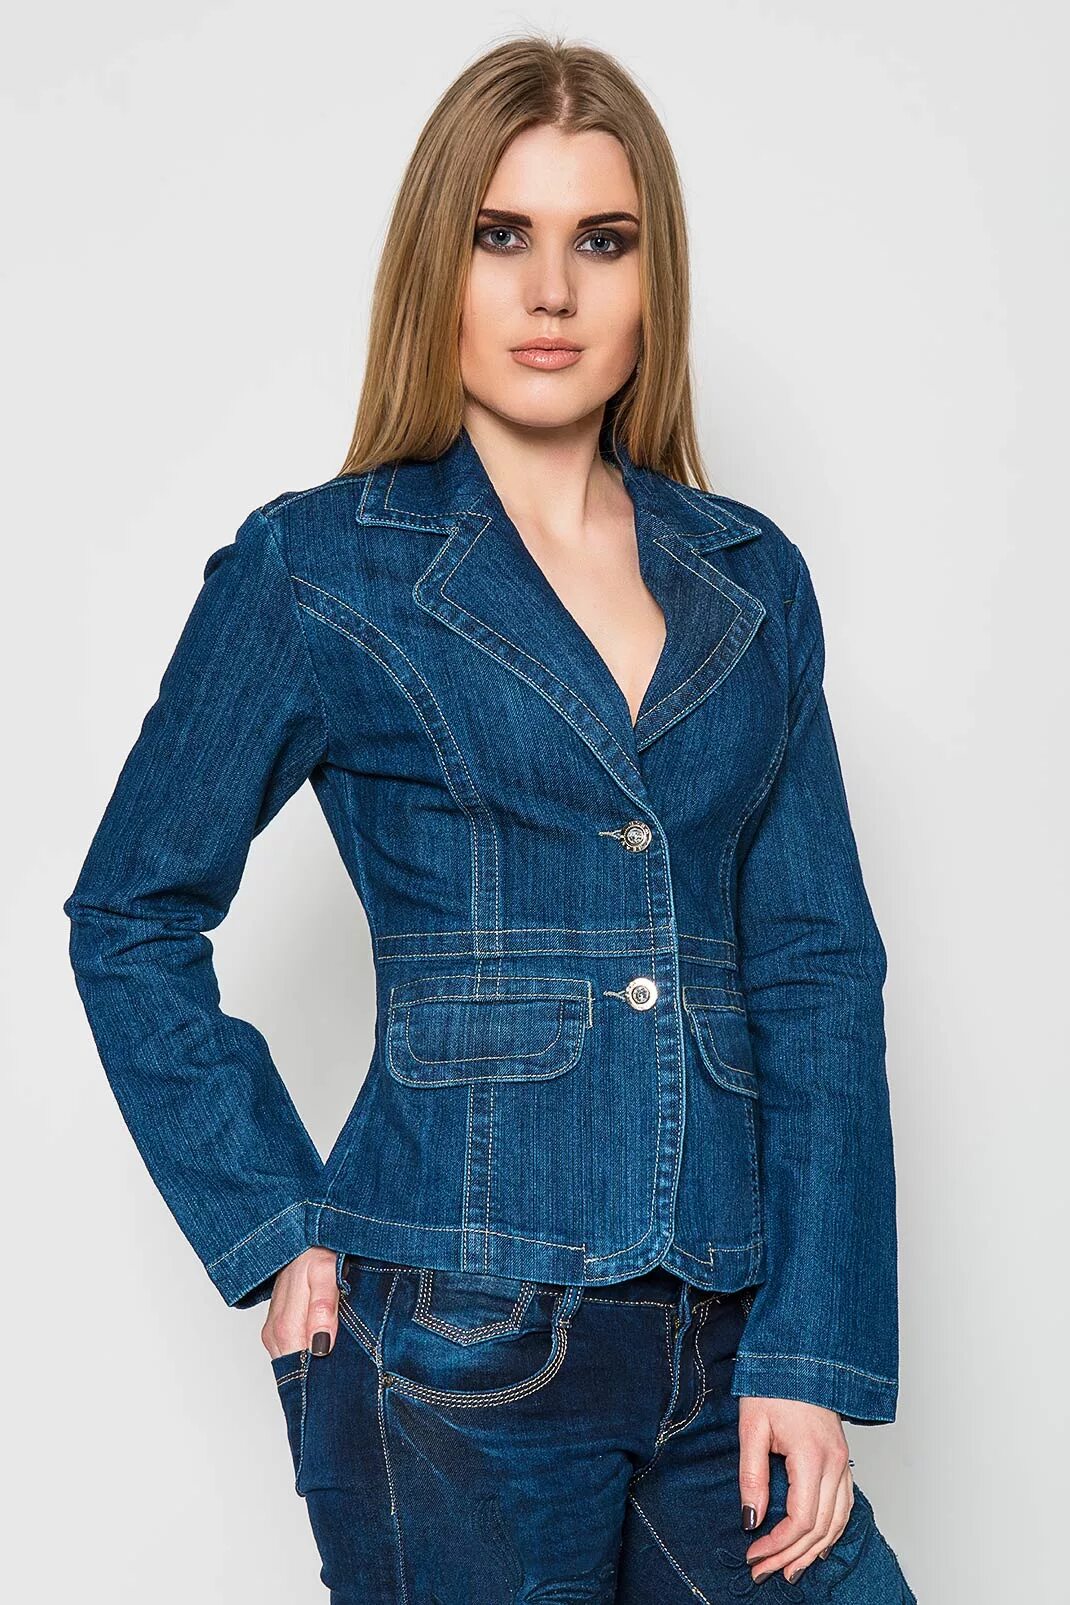 Валберис джинсовый костюм. Джинсовый жакет женский Westland 8489. Джинсовый жакет женский приталенный. Пиджак джинсовый женский приталенный. Джинсовая куртка приталенная женская.